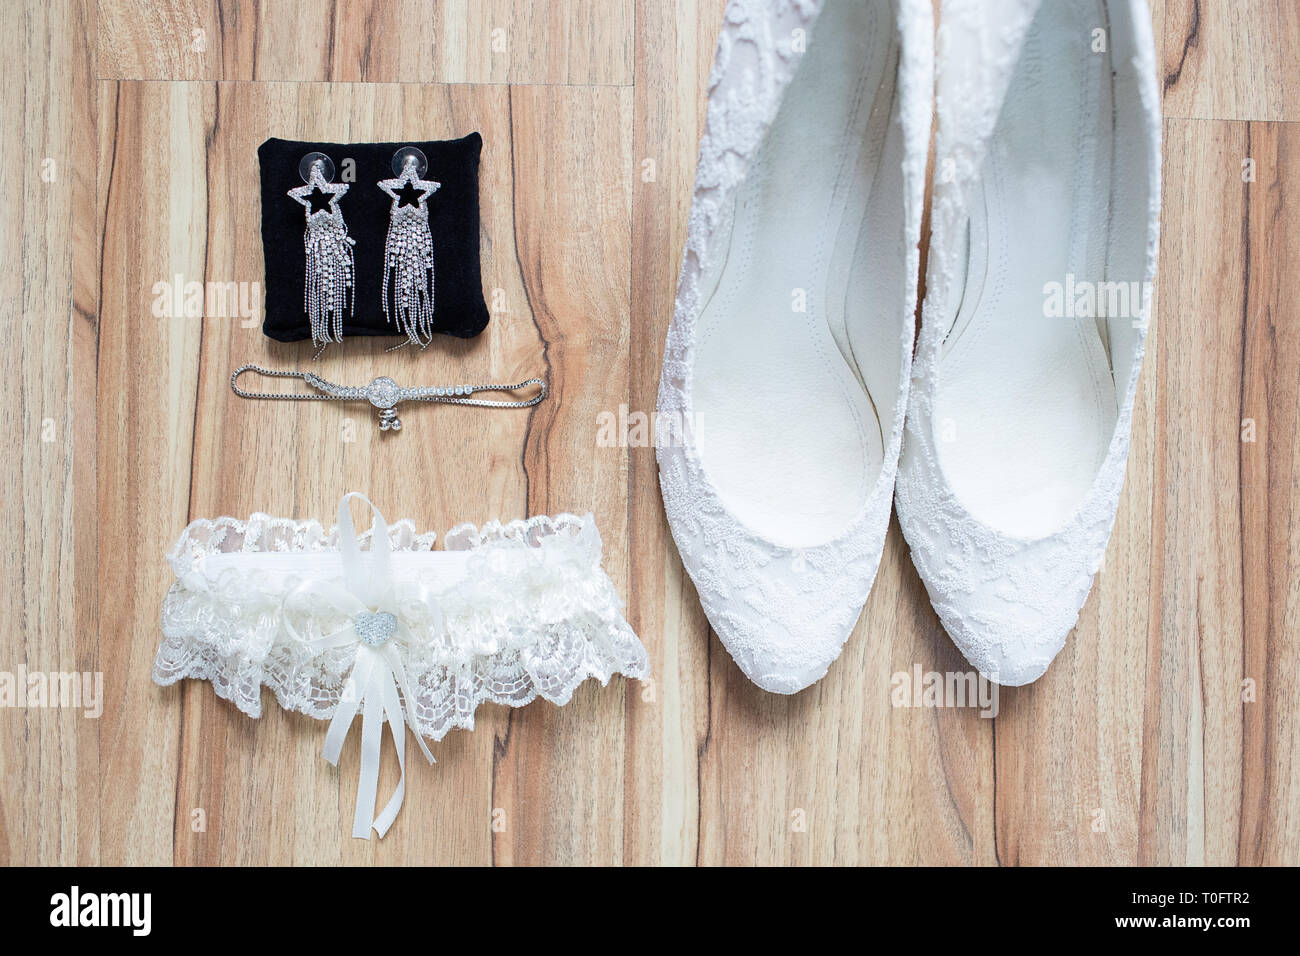 Accessoire Mariage mariée, mise à plat. Des chaussures élégantes, d'oreilles, des porte-jarretelles , sur fond de bois. Banque D'Images